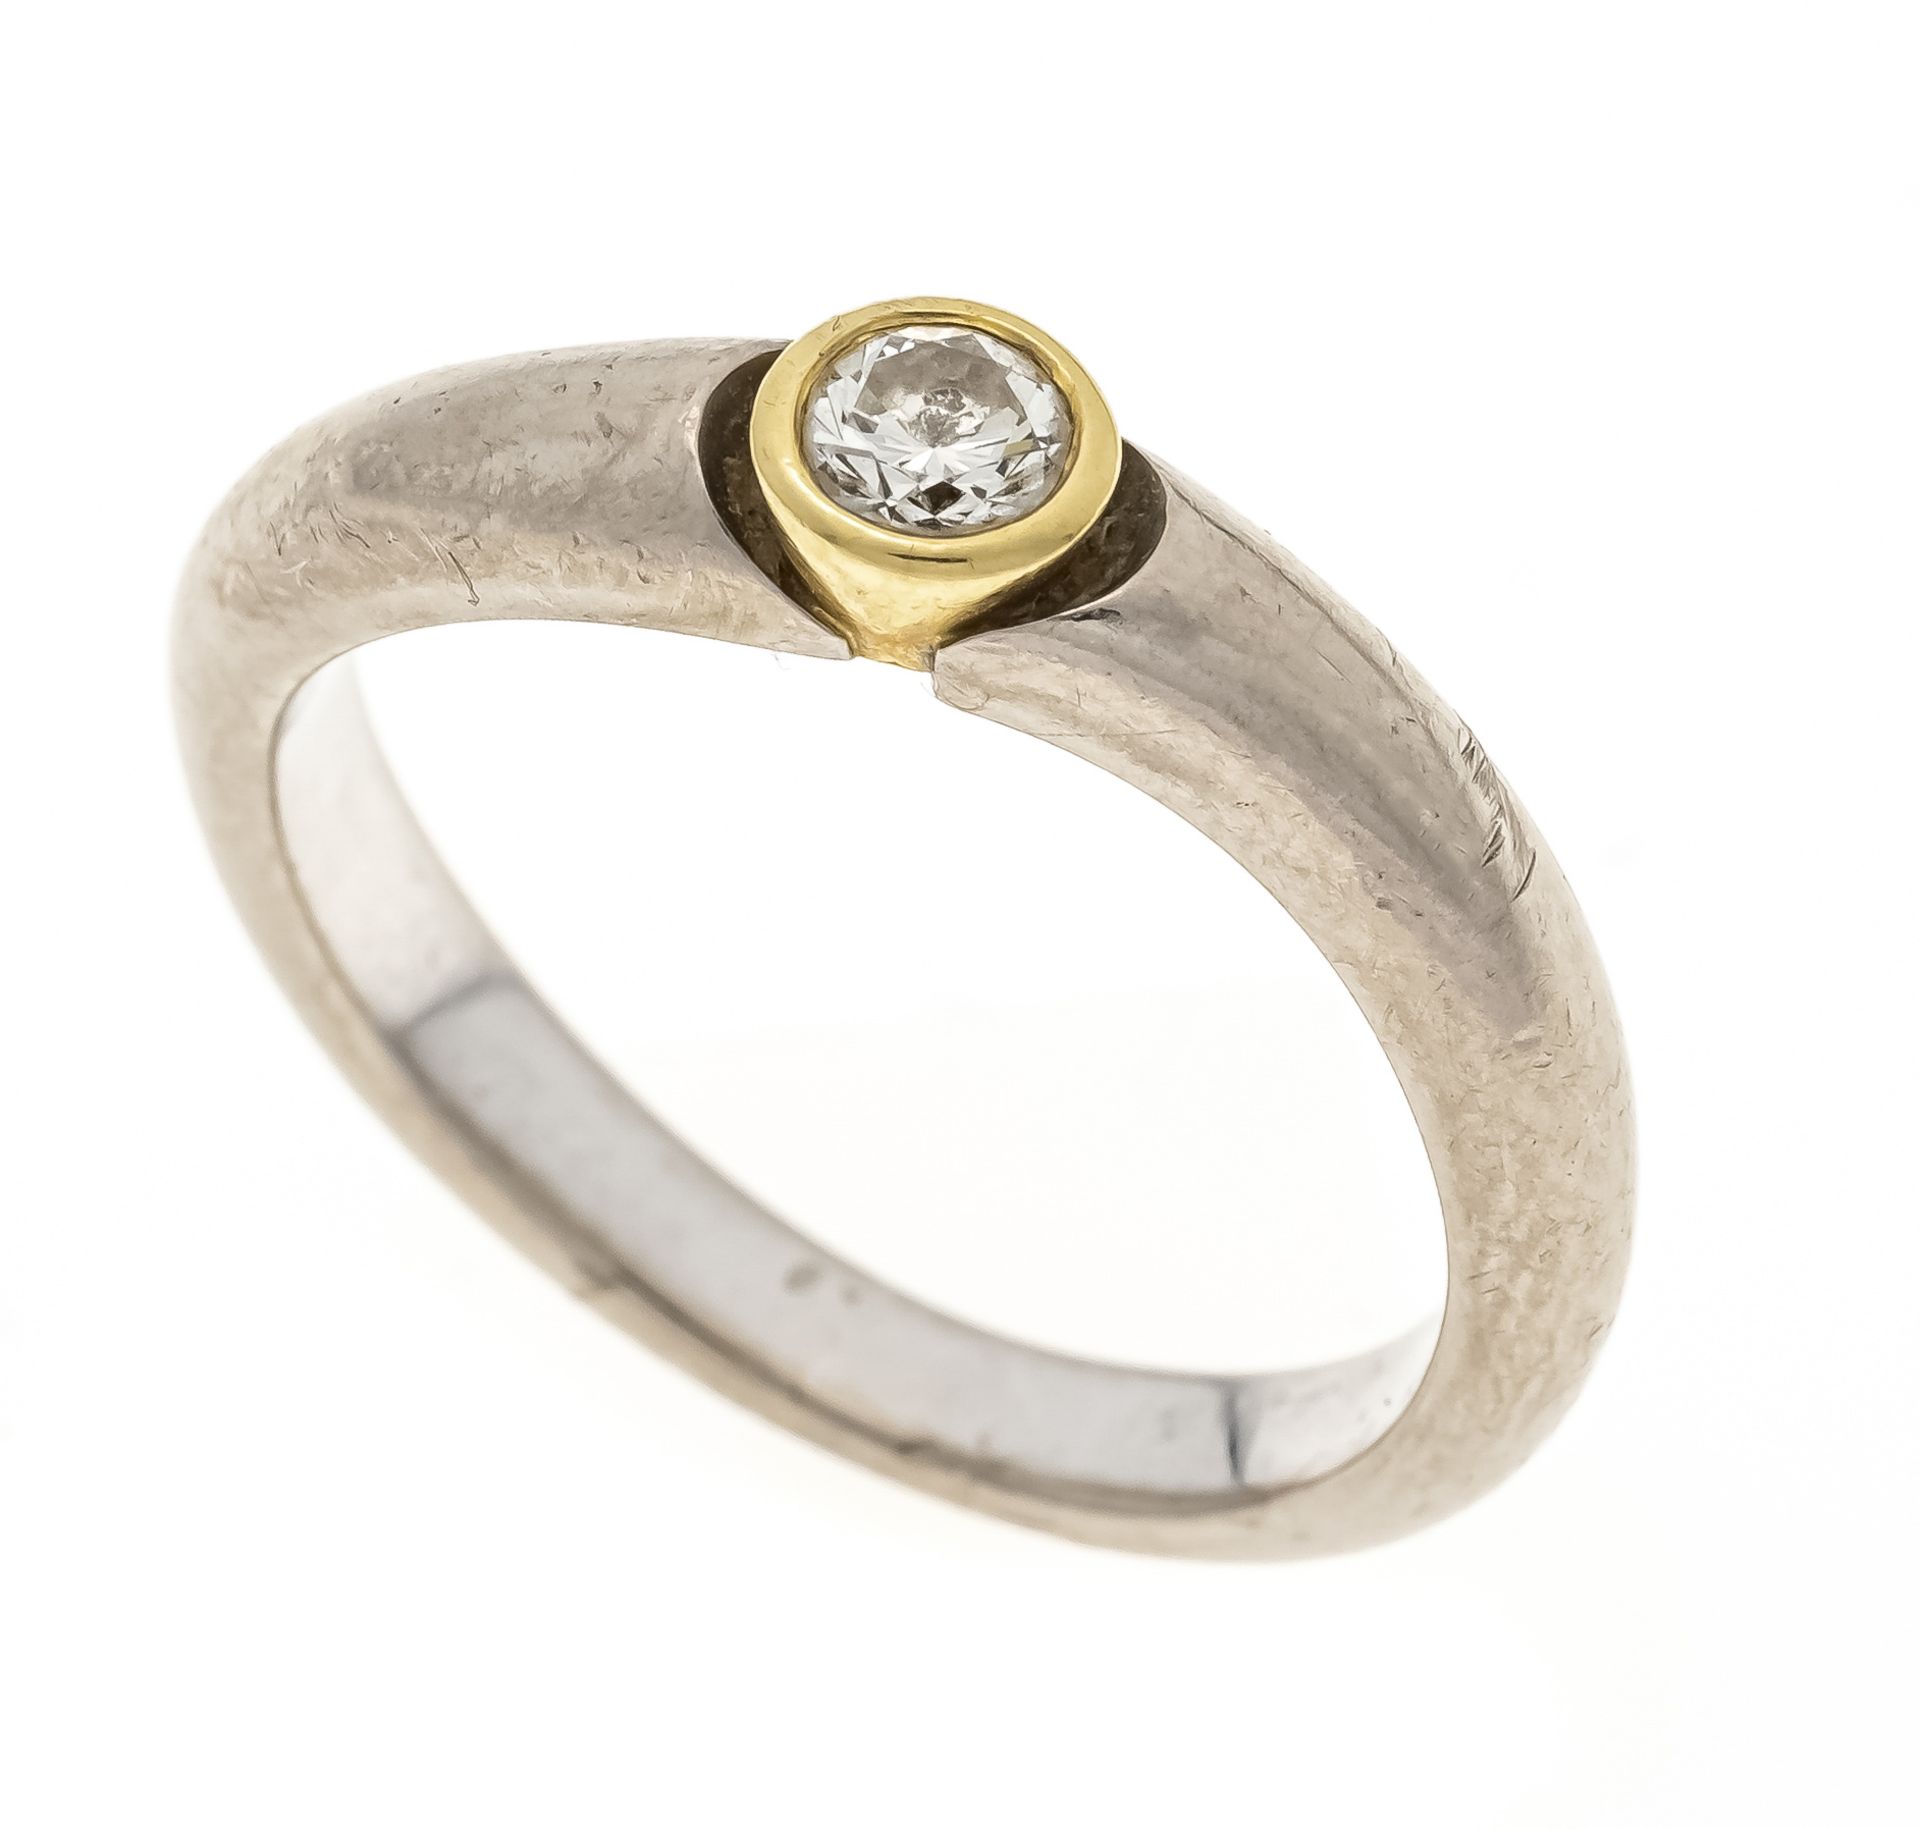 Brilliant ring GG/WG 750/000 with one brilliant-cut diamond 0.10 ct W/SI, RG 52, 5.4 g